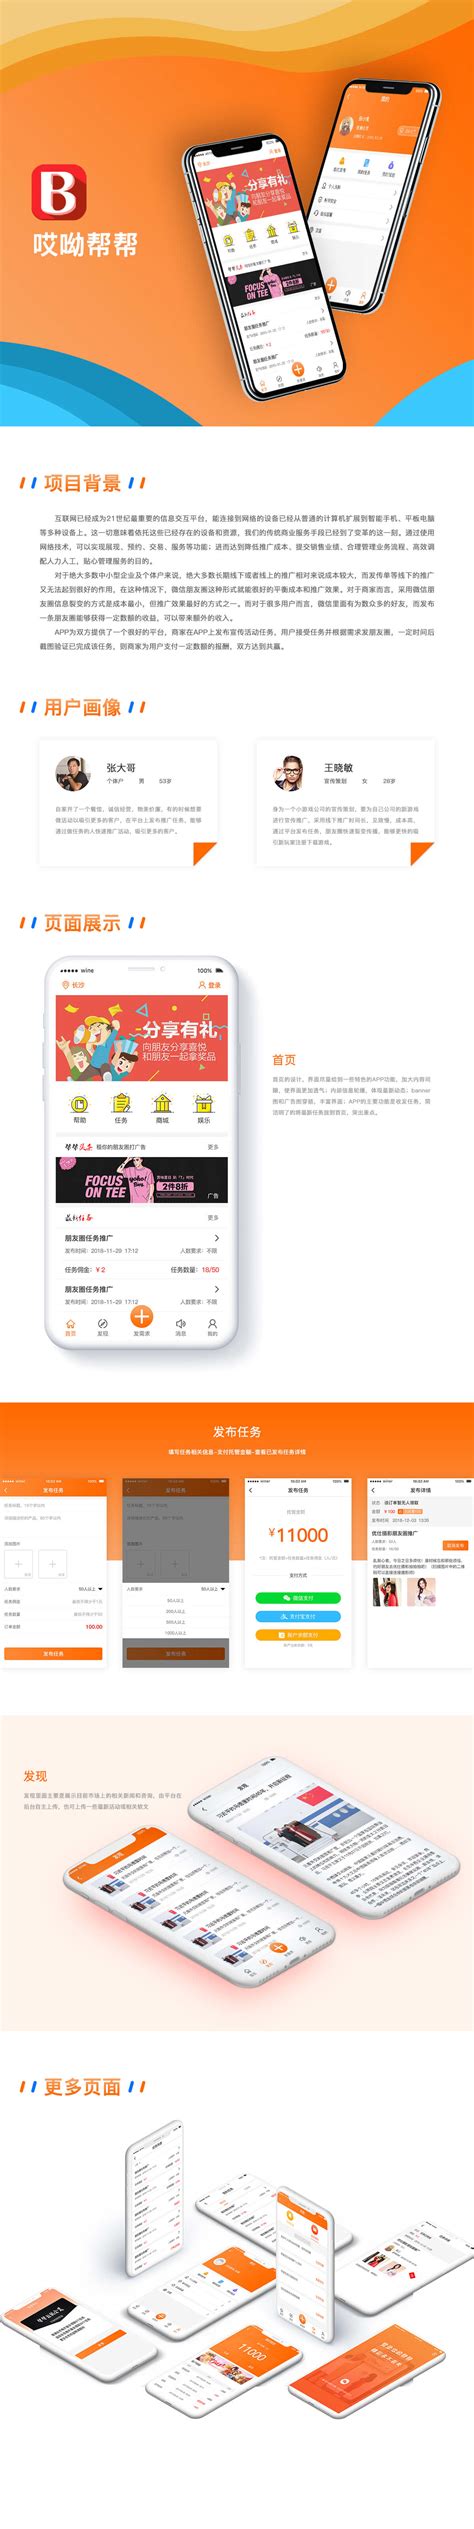 案例展示【微唯宝】湖南APP定制_长沙app开发公司_长沙微信制作